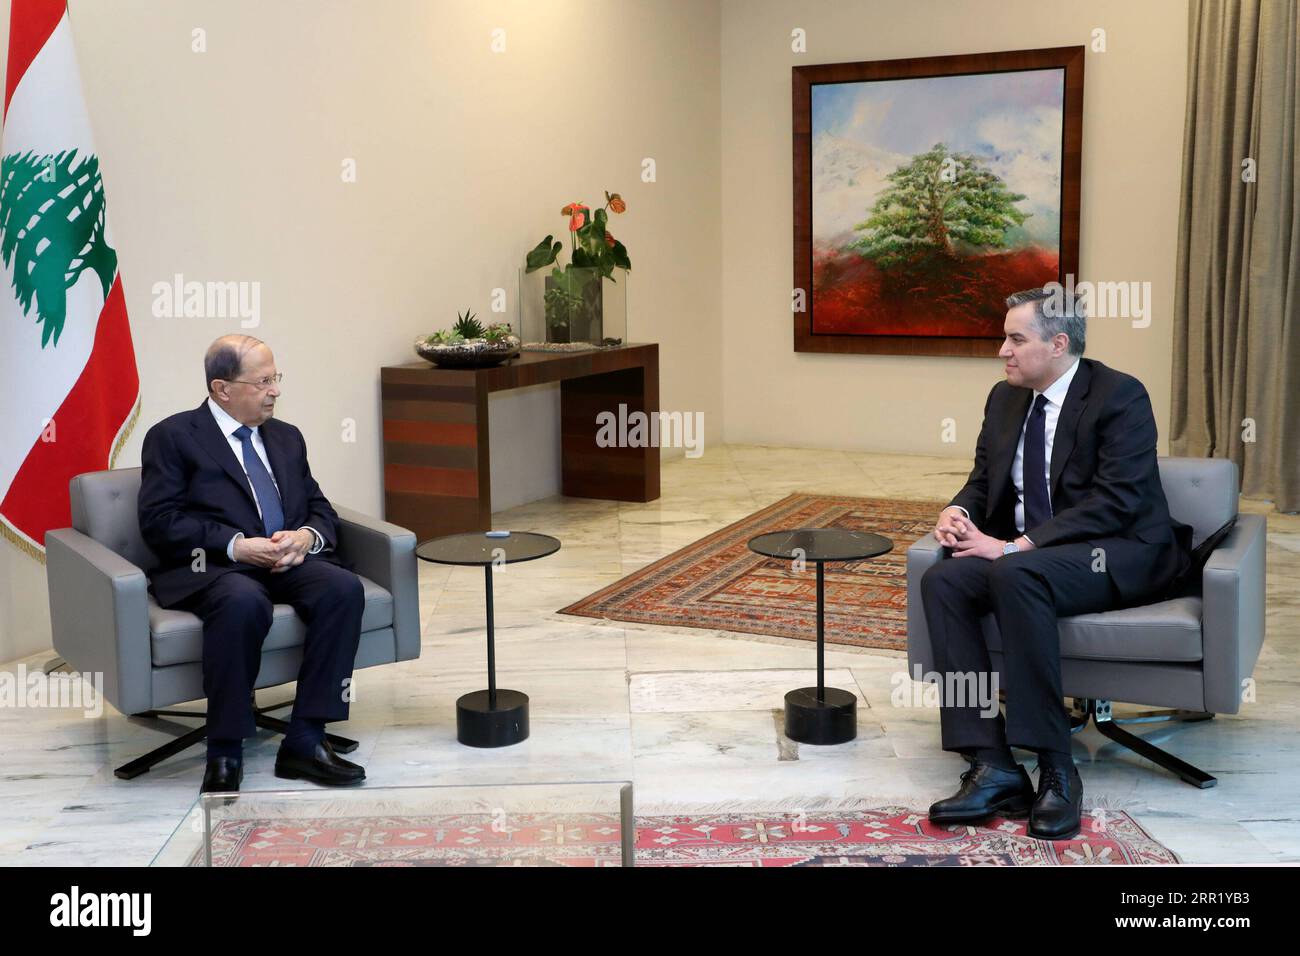 200926 -- BEIRUT, 26. September 2020 -- der designierte libanesische Premierminister Mustapha Adib R trifft sich mit Präsident Michel Aoun in Beirut, Libanon, 26. September 2020. Adib erklärte am Samstag, dass er es versäumt habe, ein neues Kabinett zu bilden, da er nicht in der Lage sei, Hindernisse zu überwinden, die die Mission behindern, berichtete der lokale Fernsehsender al-Jadeed. /Handout über Xinhua LEBANON-BEIRUT-PM DESIGNIEREN SIE Dalatix&xNohra PUBLICATIONxNOTxINxCHN Stockfoto